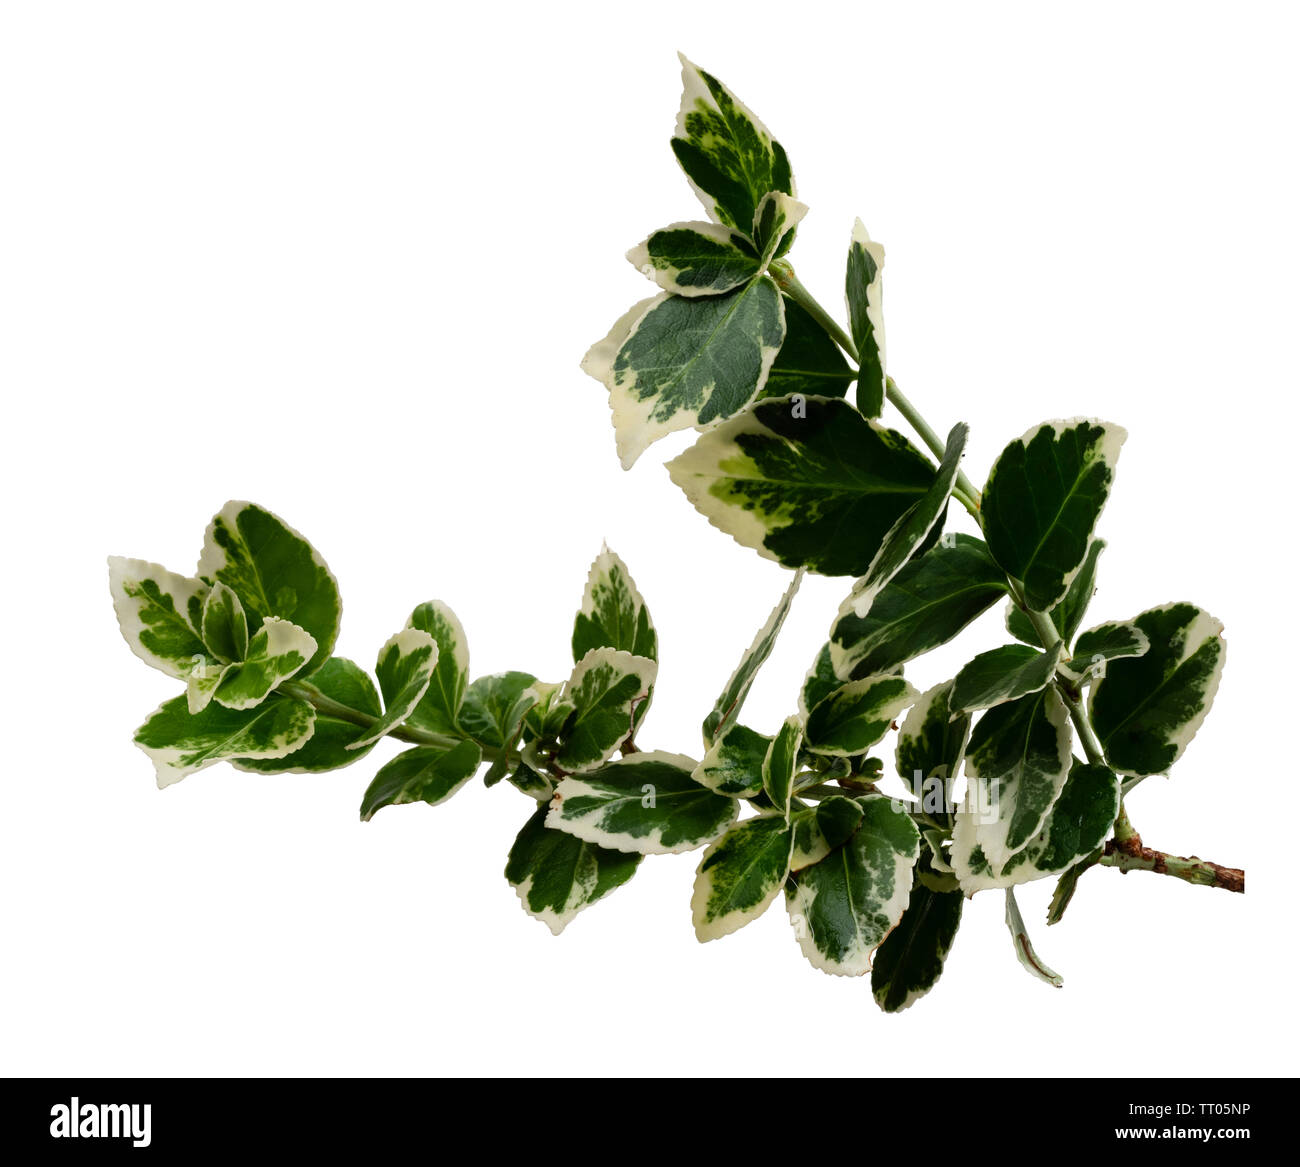 Bunte weiße und grüne Laub der Hardy Evergreen bittersüße Strauch, Euonymus undulata 'Emerald Gaiety', auf weissem isoliert Stockfoto